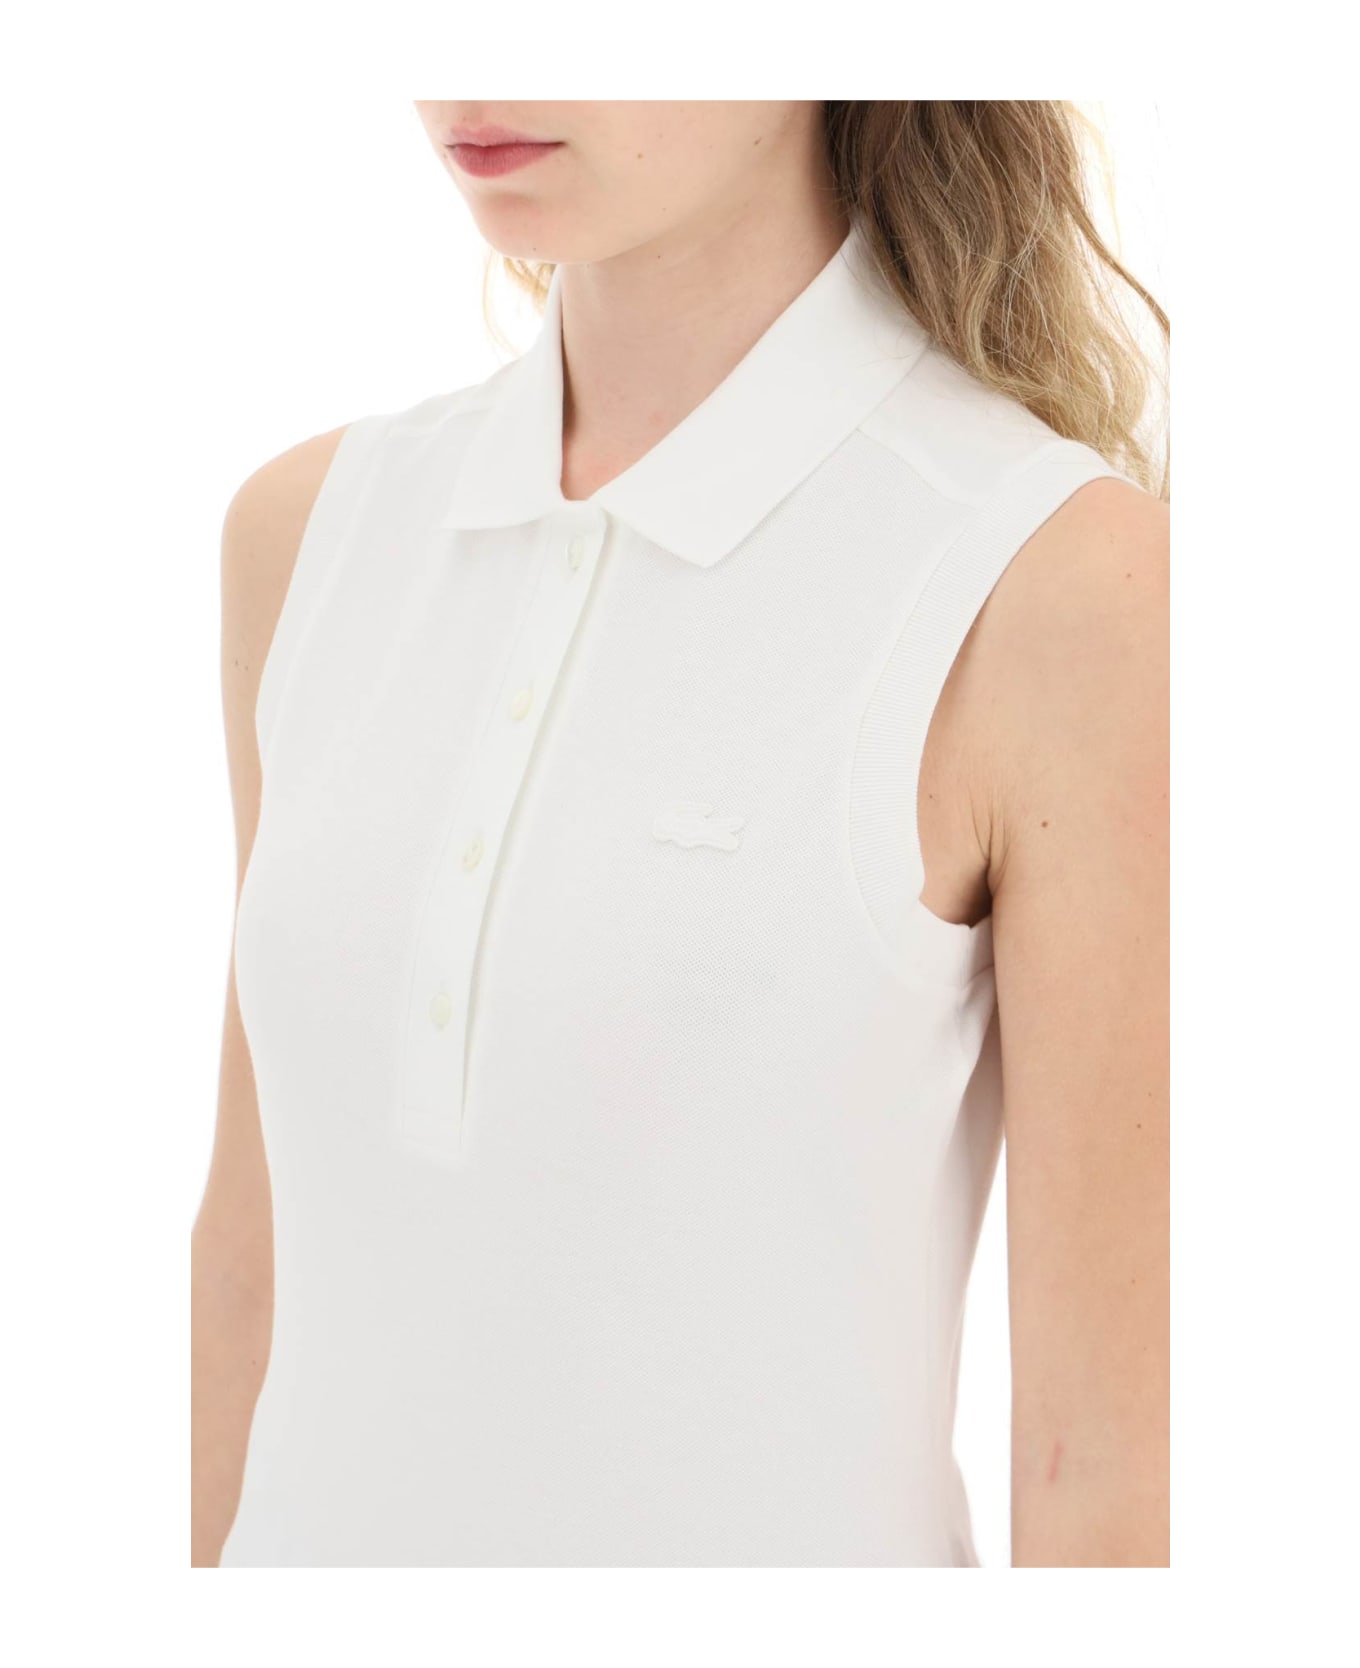 Lacoste Sleeveless Polo Shirt - WHITE (White)